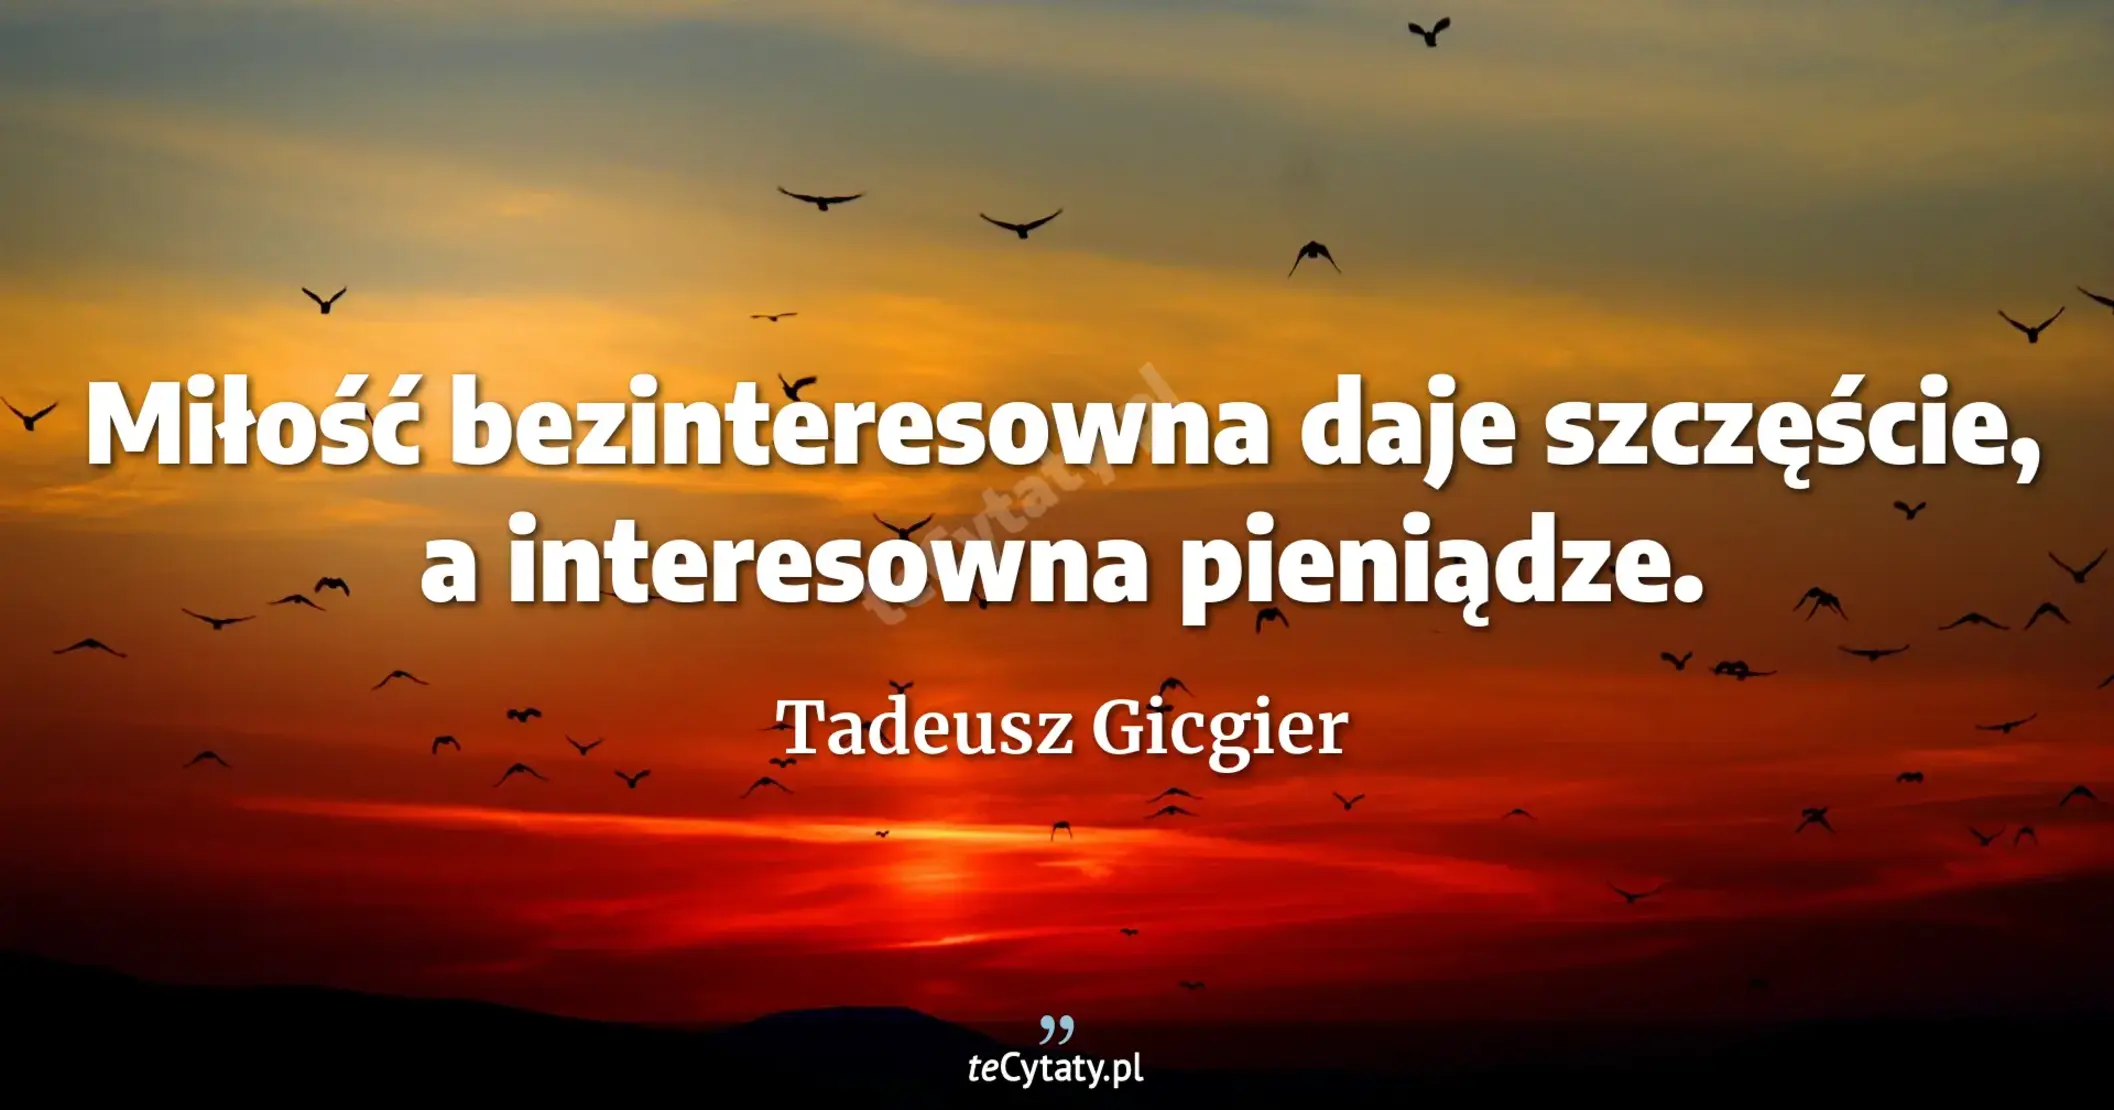 Miłość bezinteresowna daje szczęście, a interesowna pieniądze. - Tadeusz Gicgier